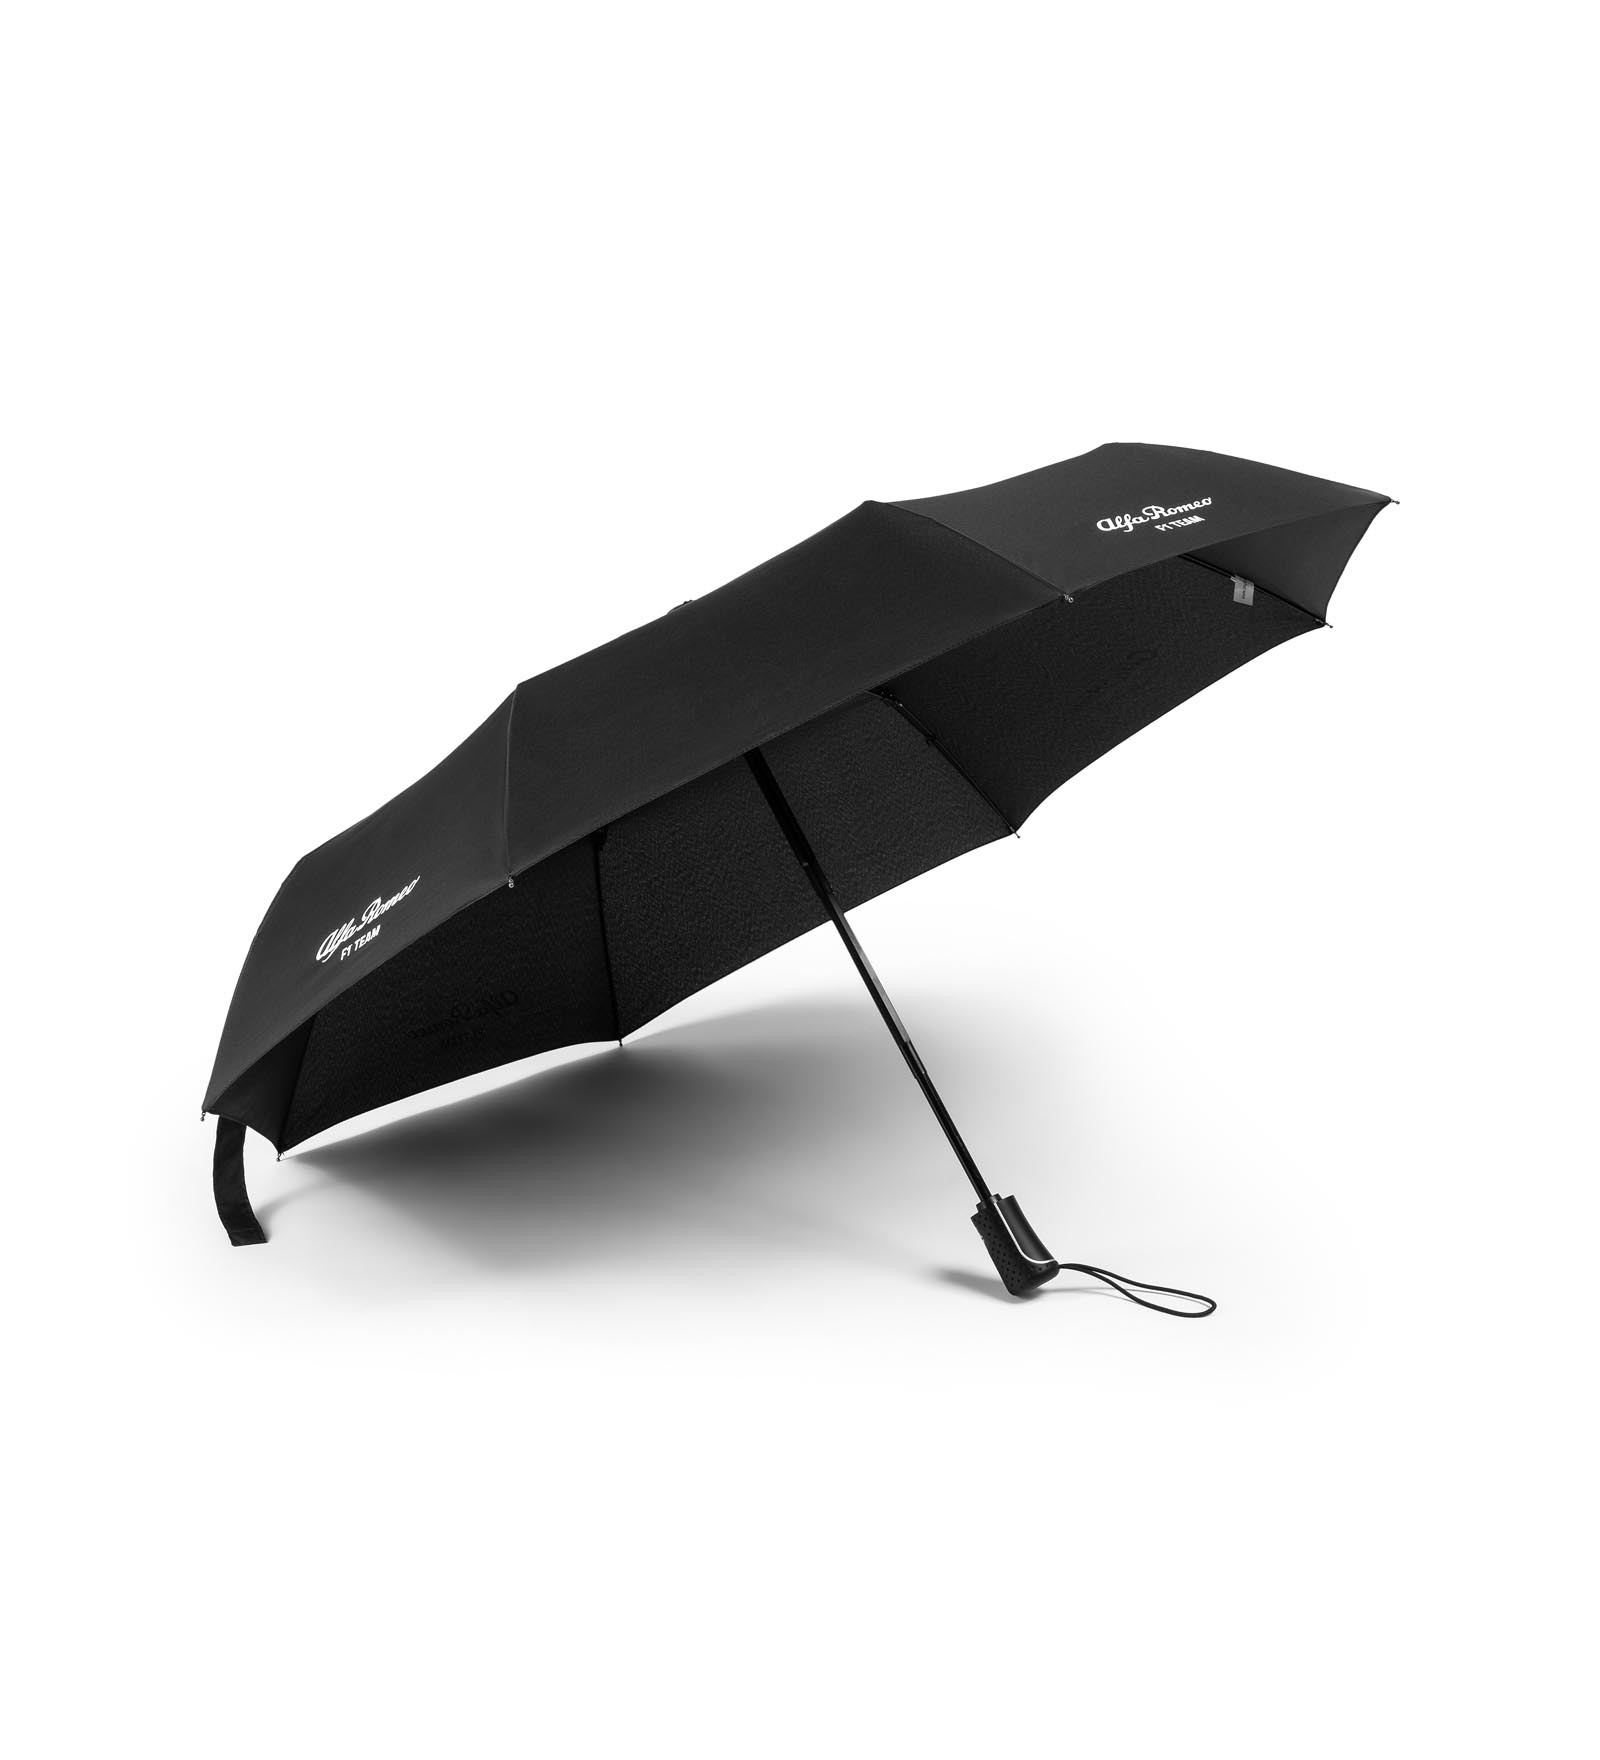 L'ombrello compatto